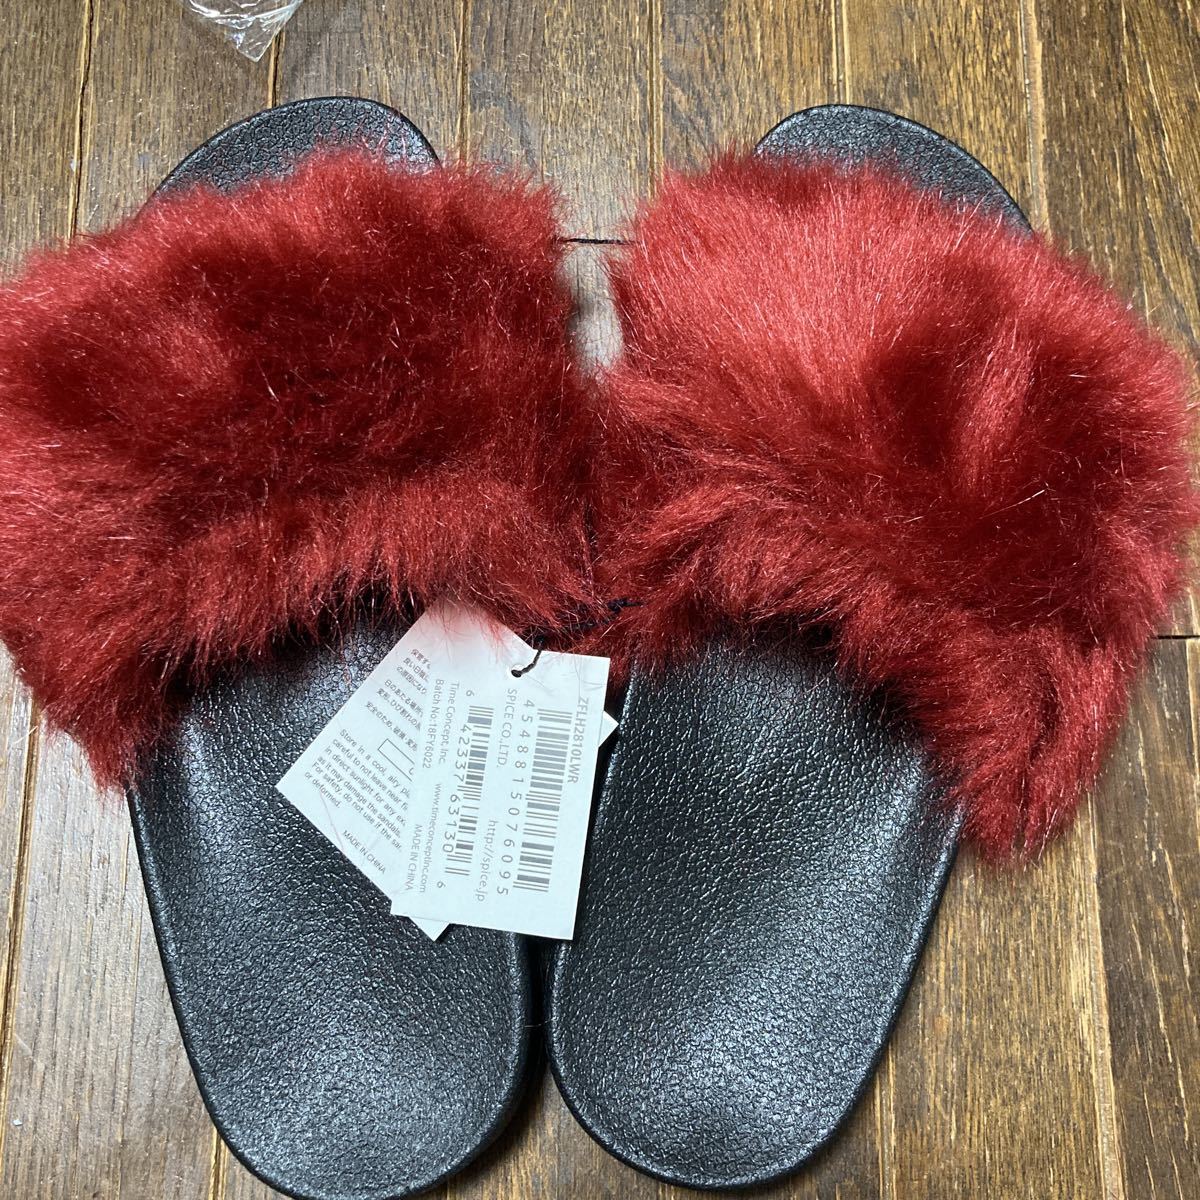  новый товар мех сандалии mo Como ko нежный красный красный Raver сандалии L23-23.5 примерно нежный красный мех 